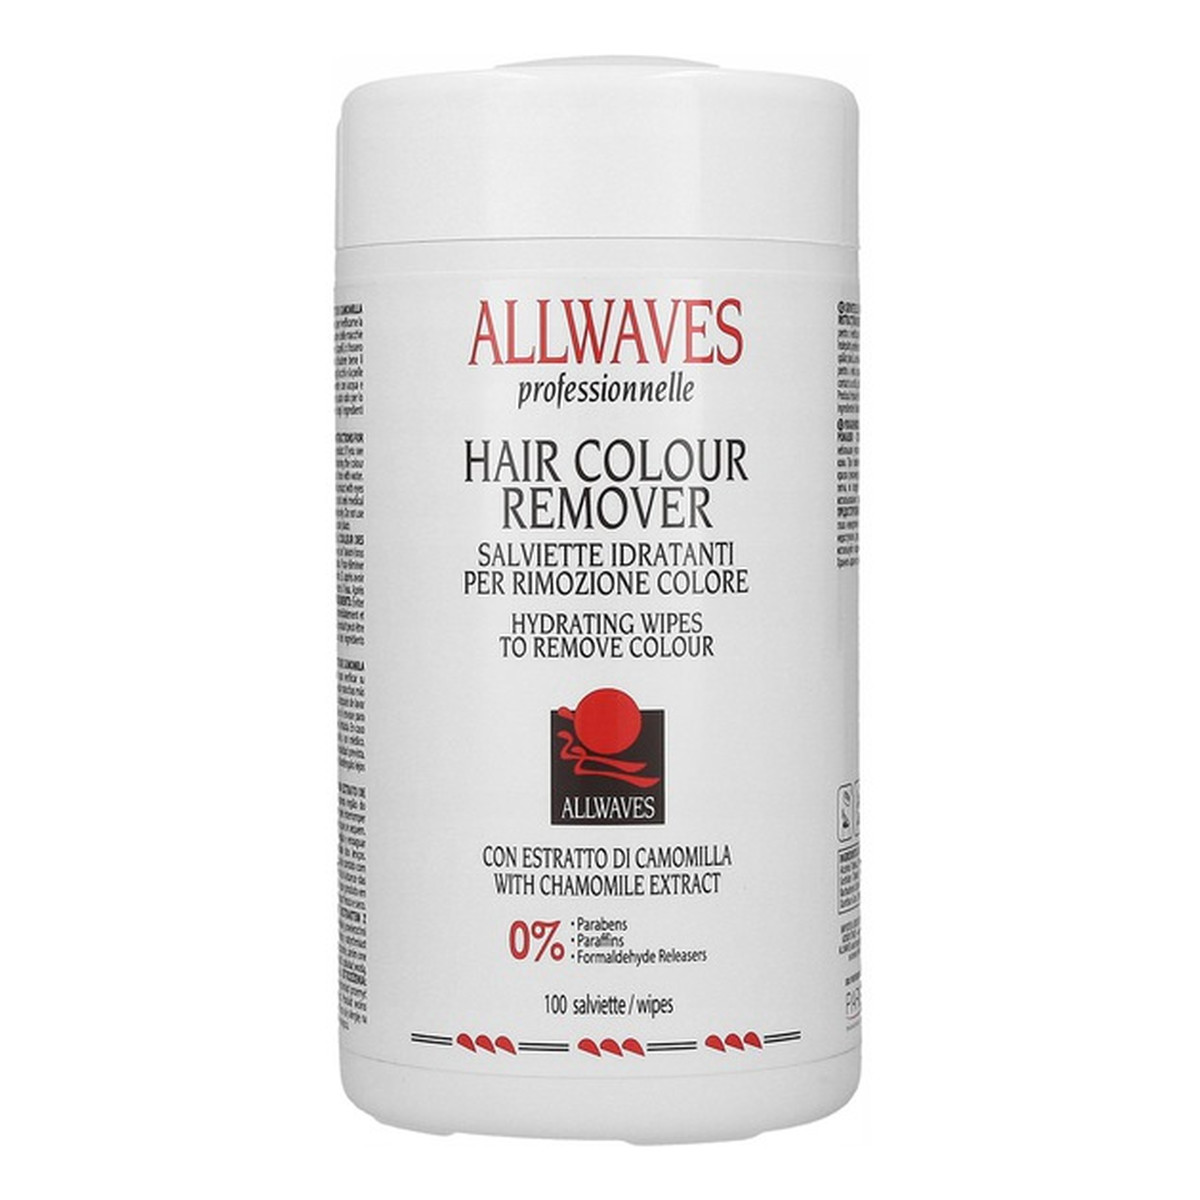 Allwaves Hair Colour Remover chusteczki nawilżające do usuwania śladów farby ze skóry 100szt